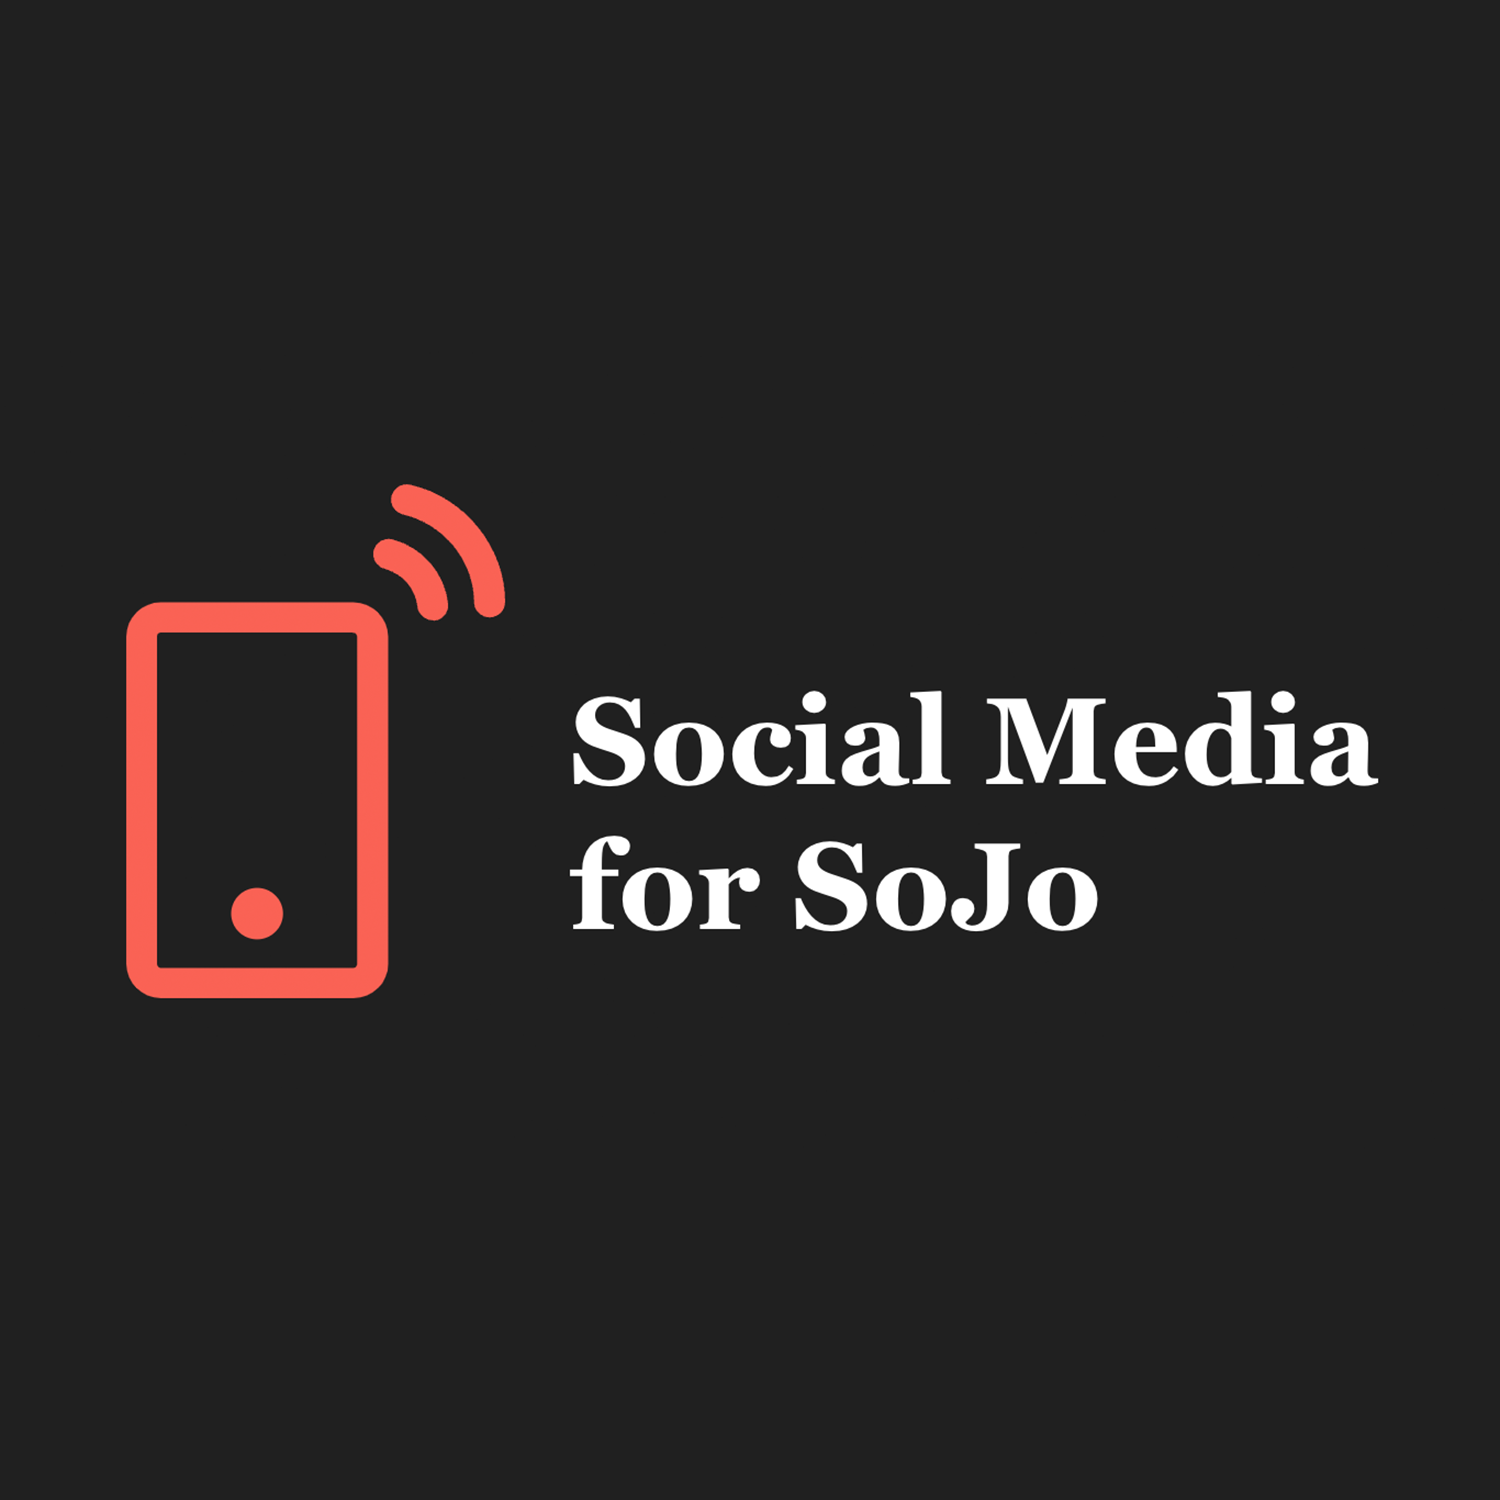 Social Media for Sojo Logo - Studio20 project 2023